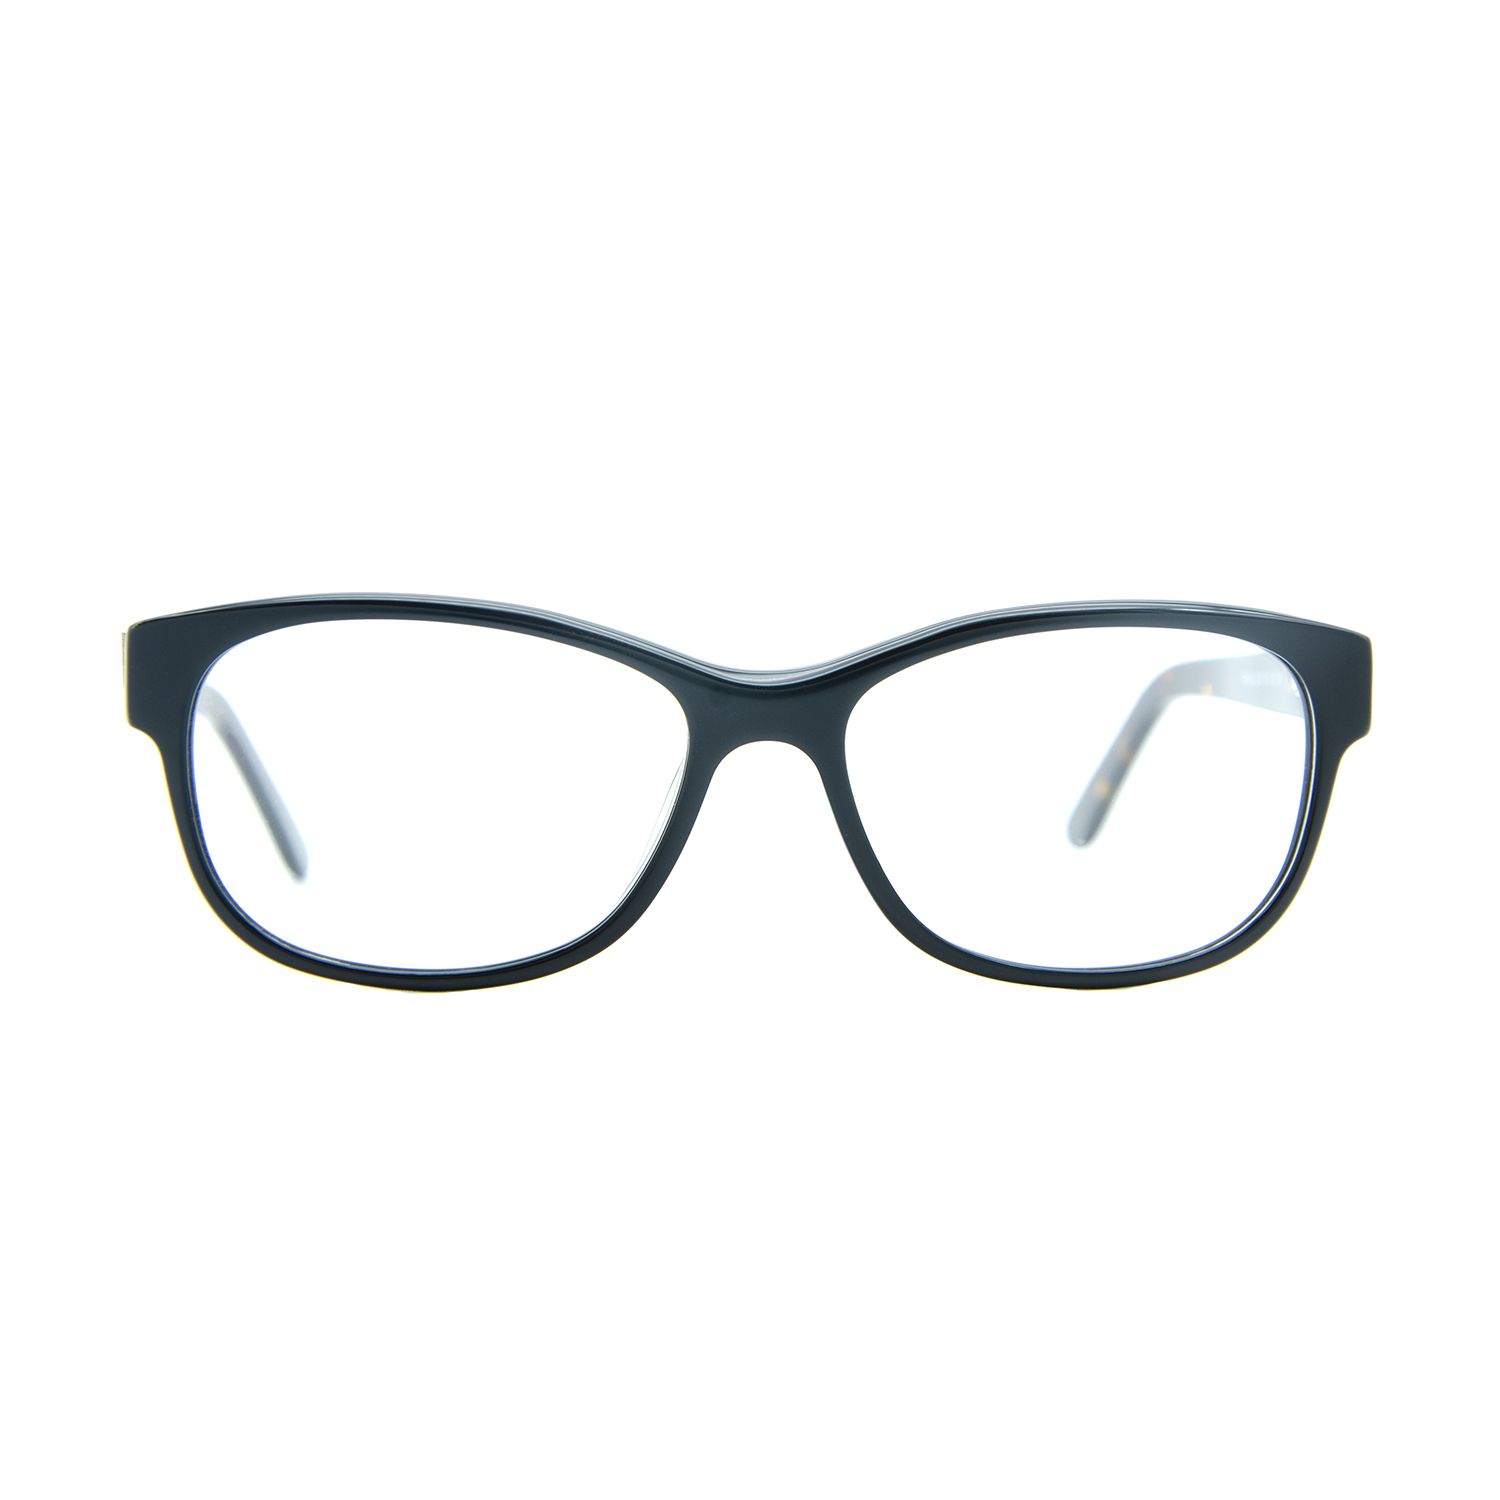 فریم عینک طبی ام اند او مدل Uma-c2 -  - 1